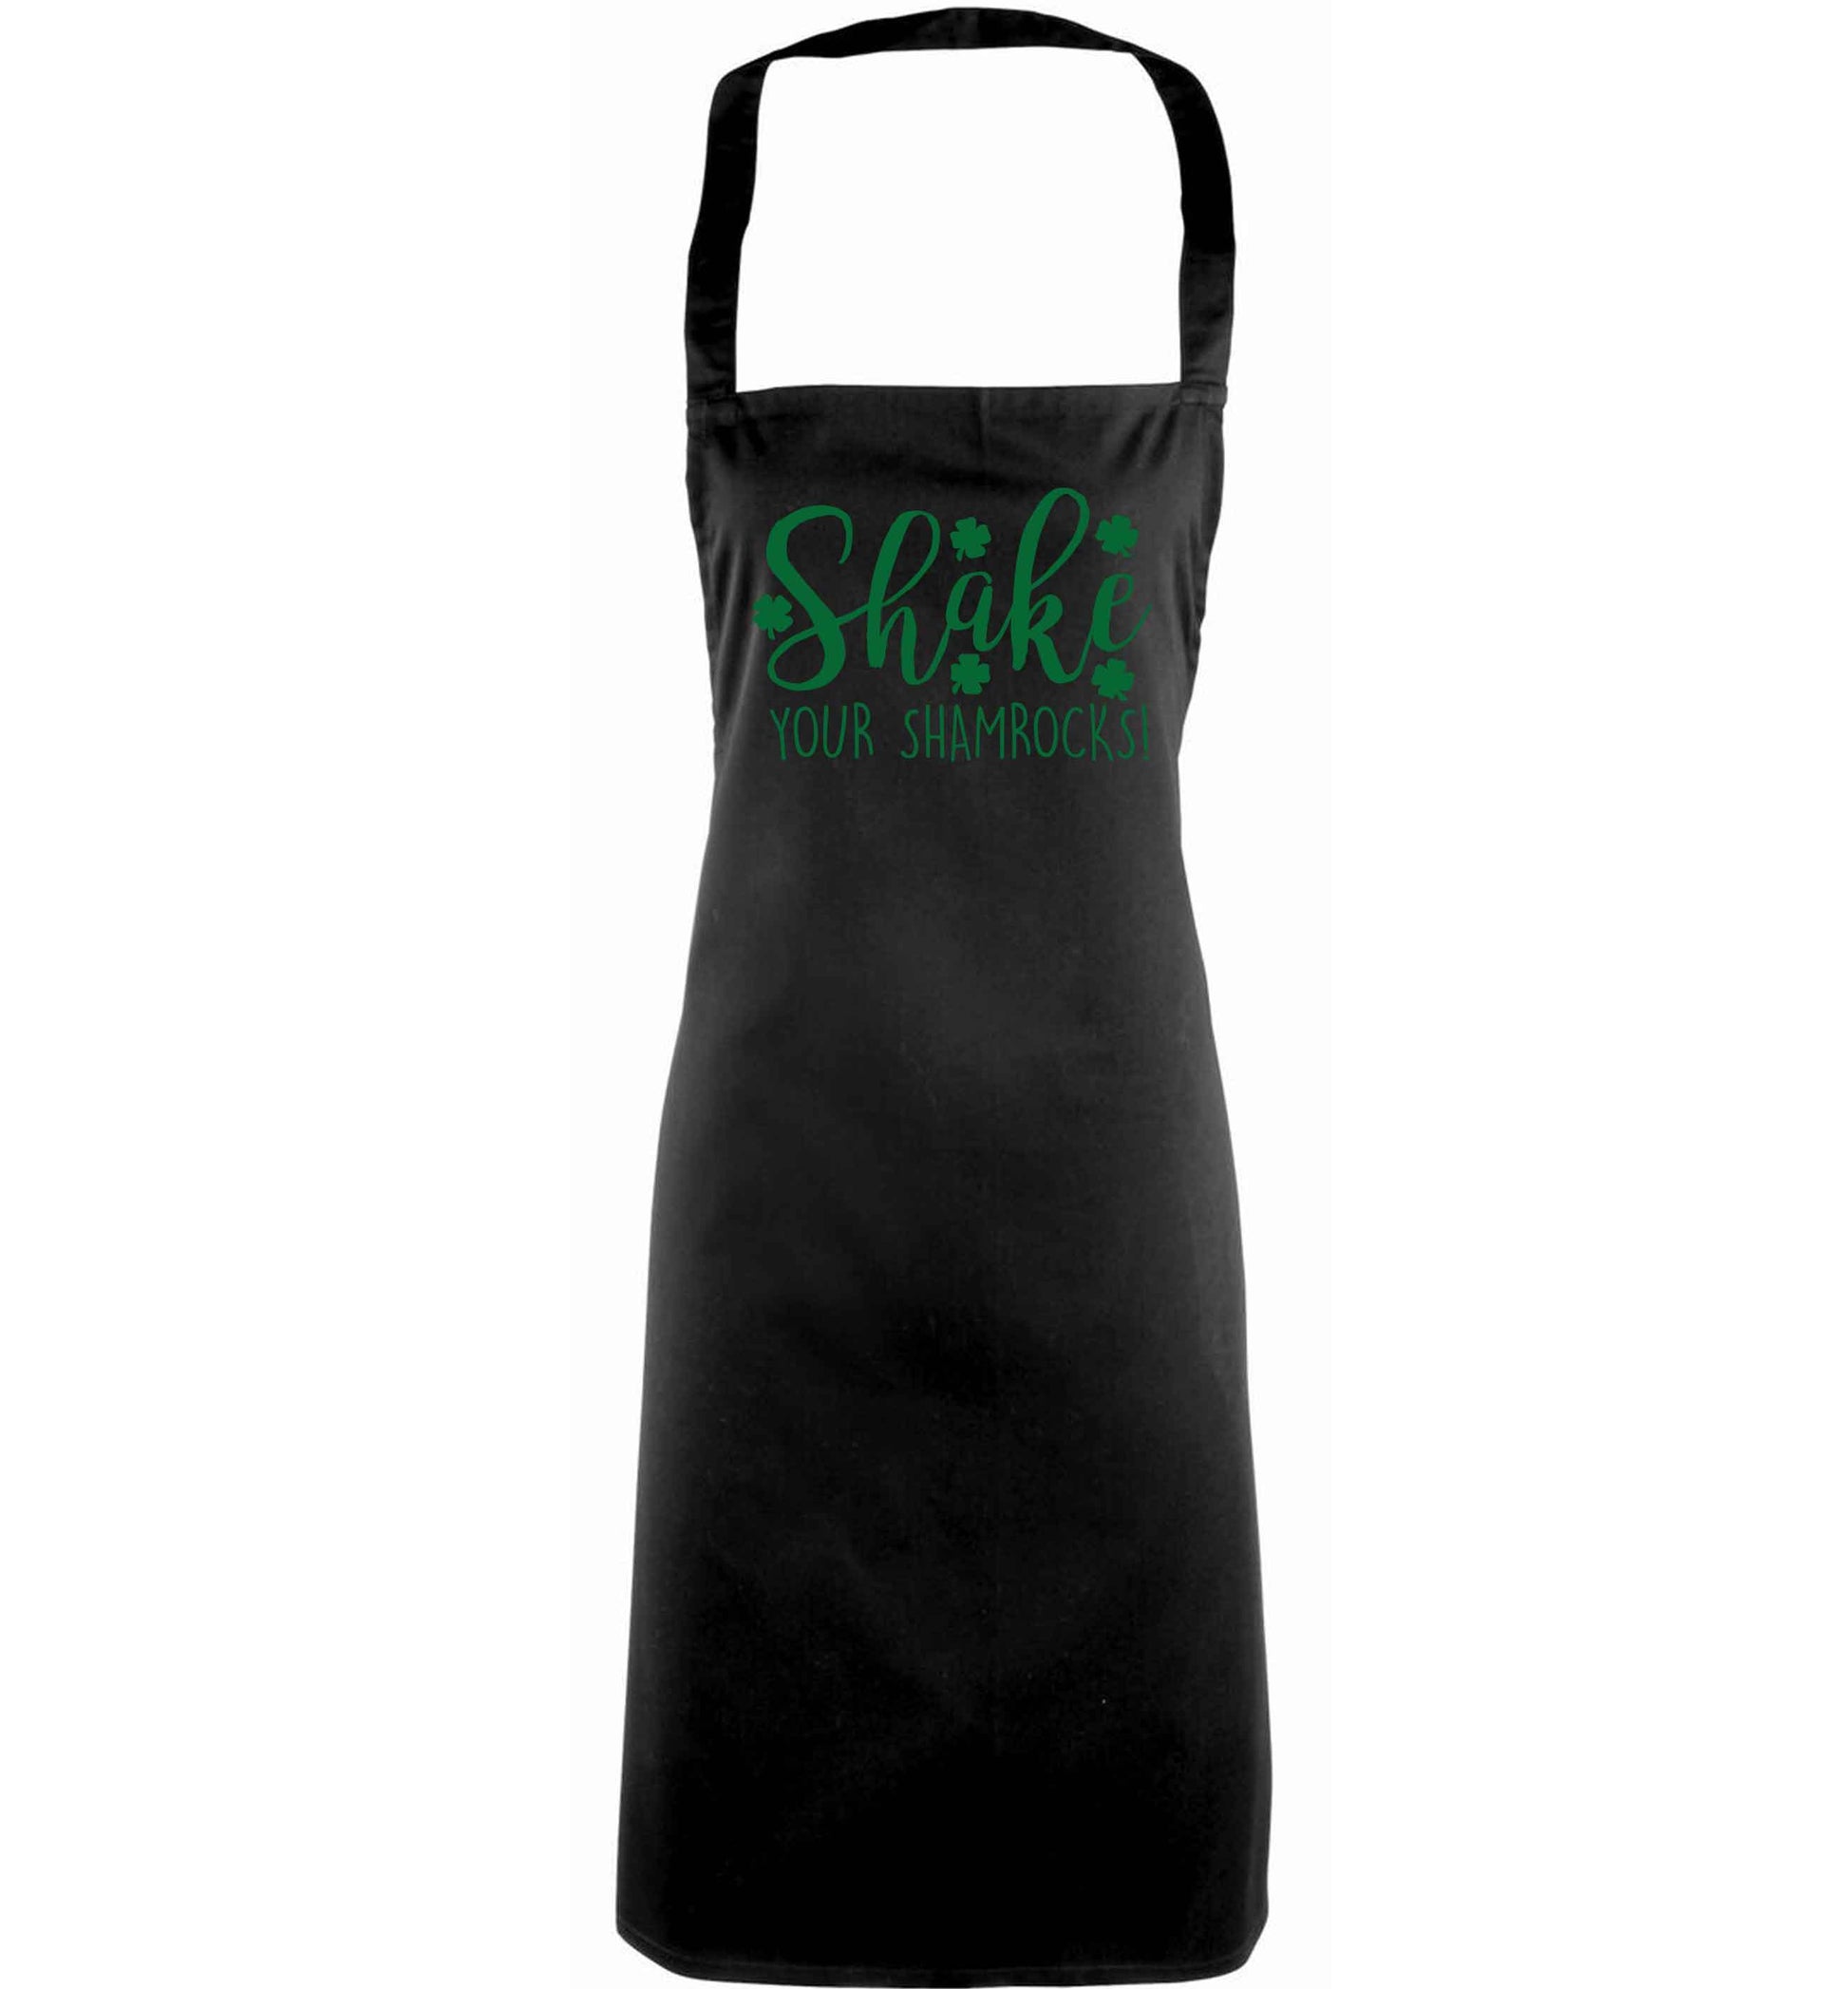 Shake your shamrocks adults black apron